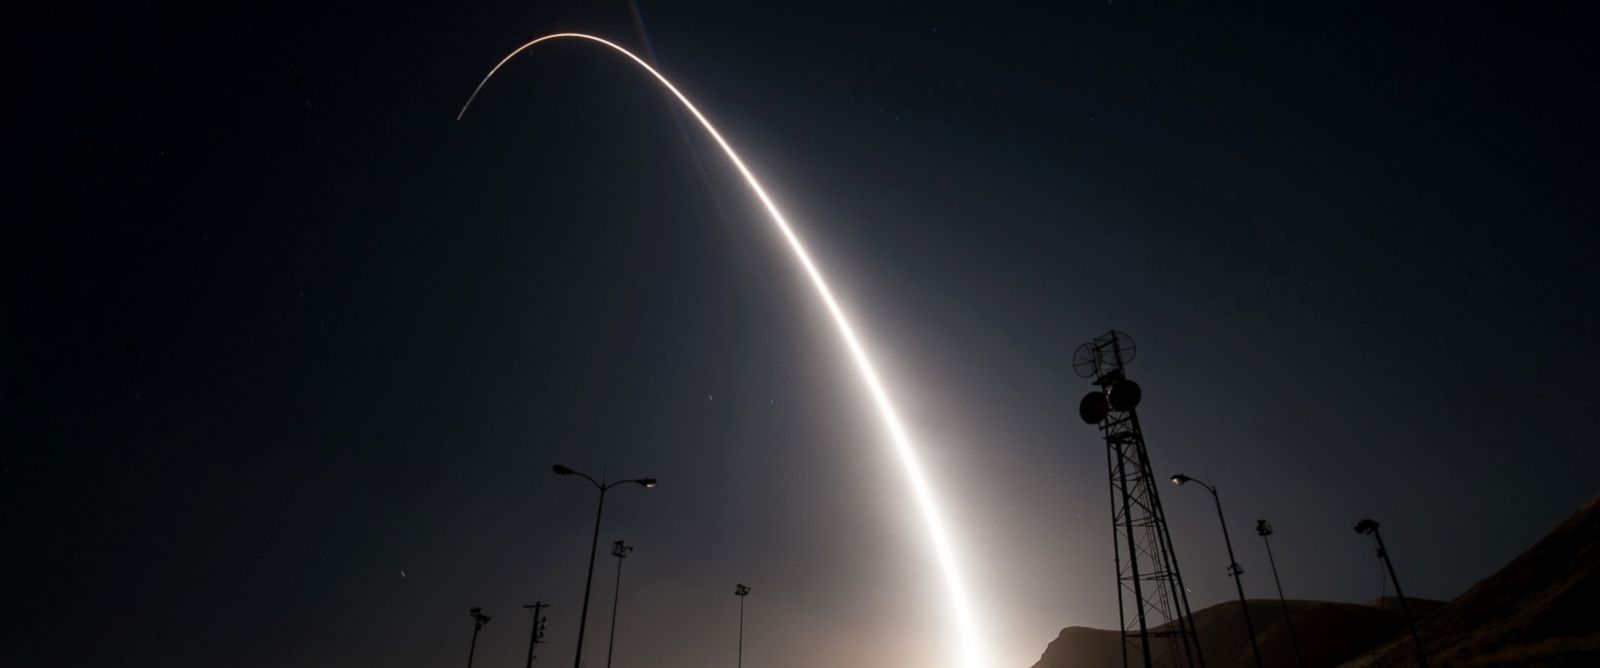 Βίντεο: Δοκιμαστική εκτόξευση ενός βαλλιστικού πυραύλου των ΗΠΑ εν μέσω εντάσεων με την Βόρειο Κορέα